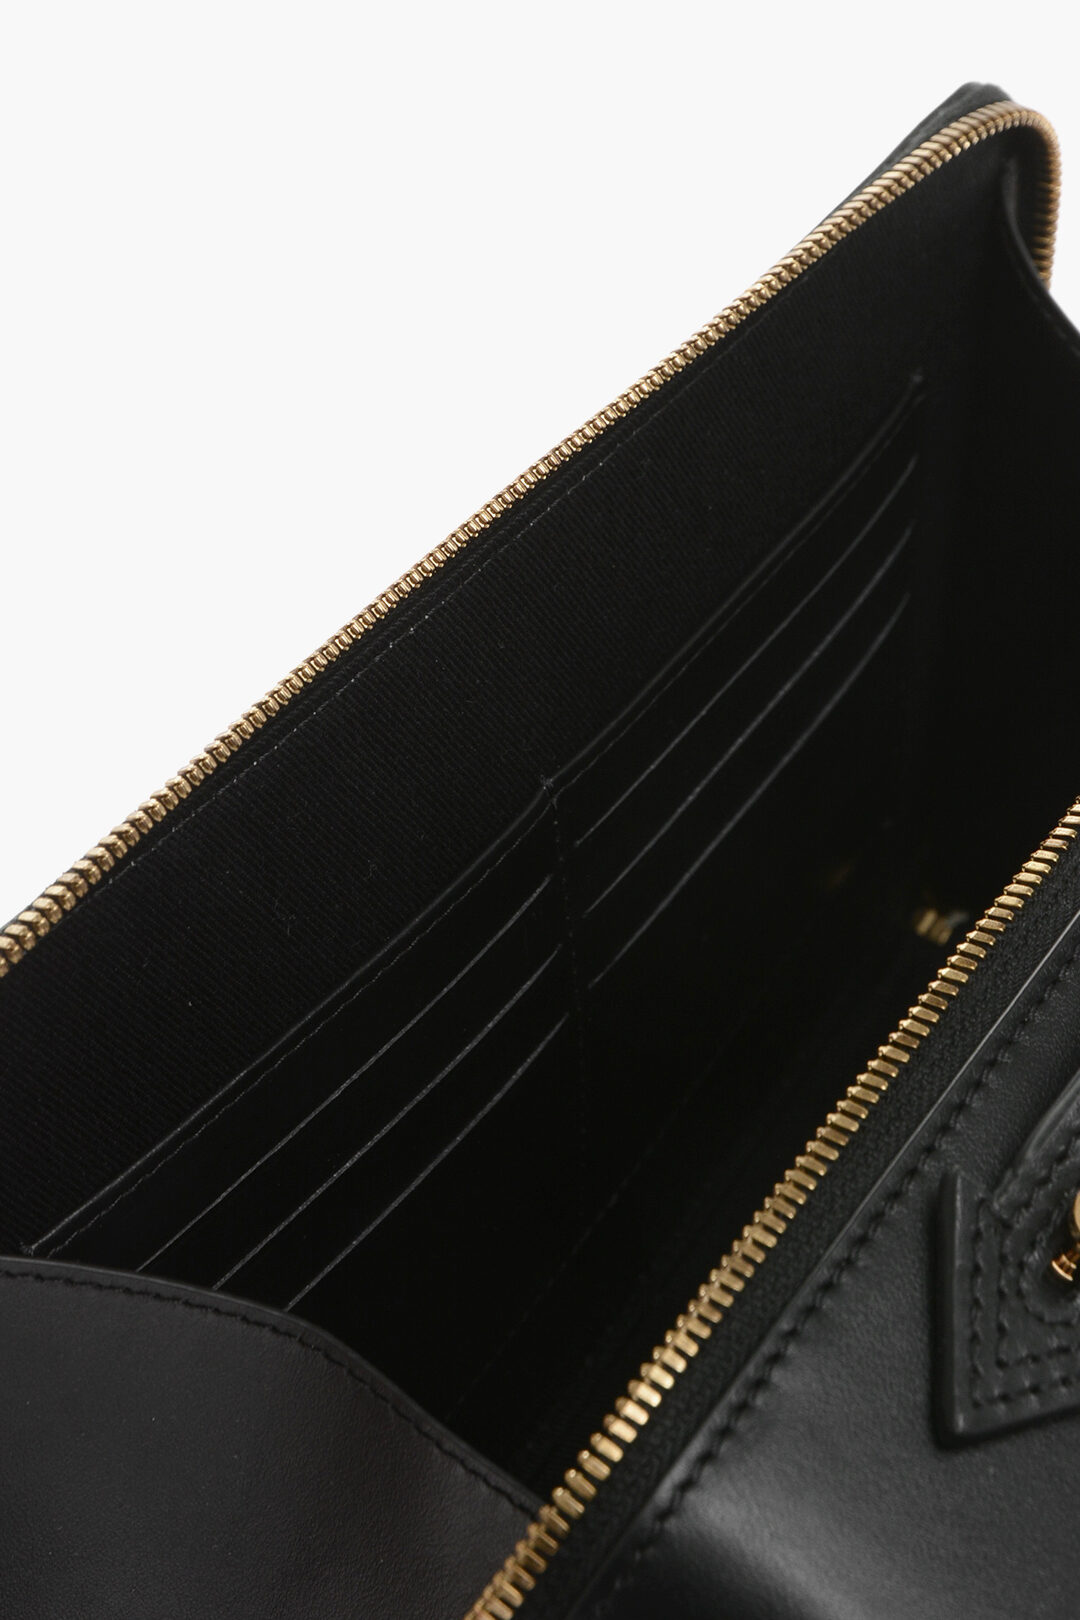 Versace Buckle Bags for Men | Mercari